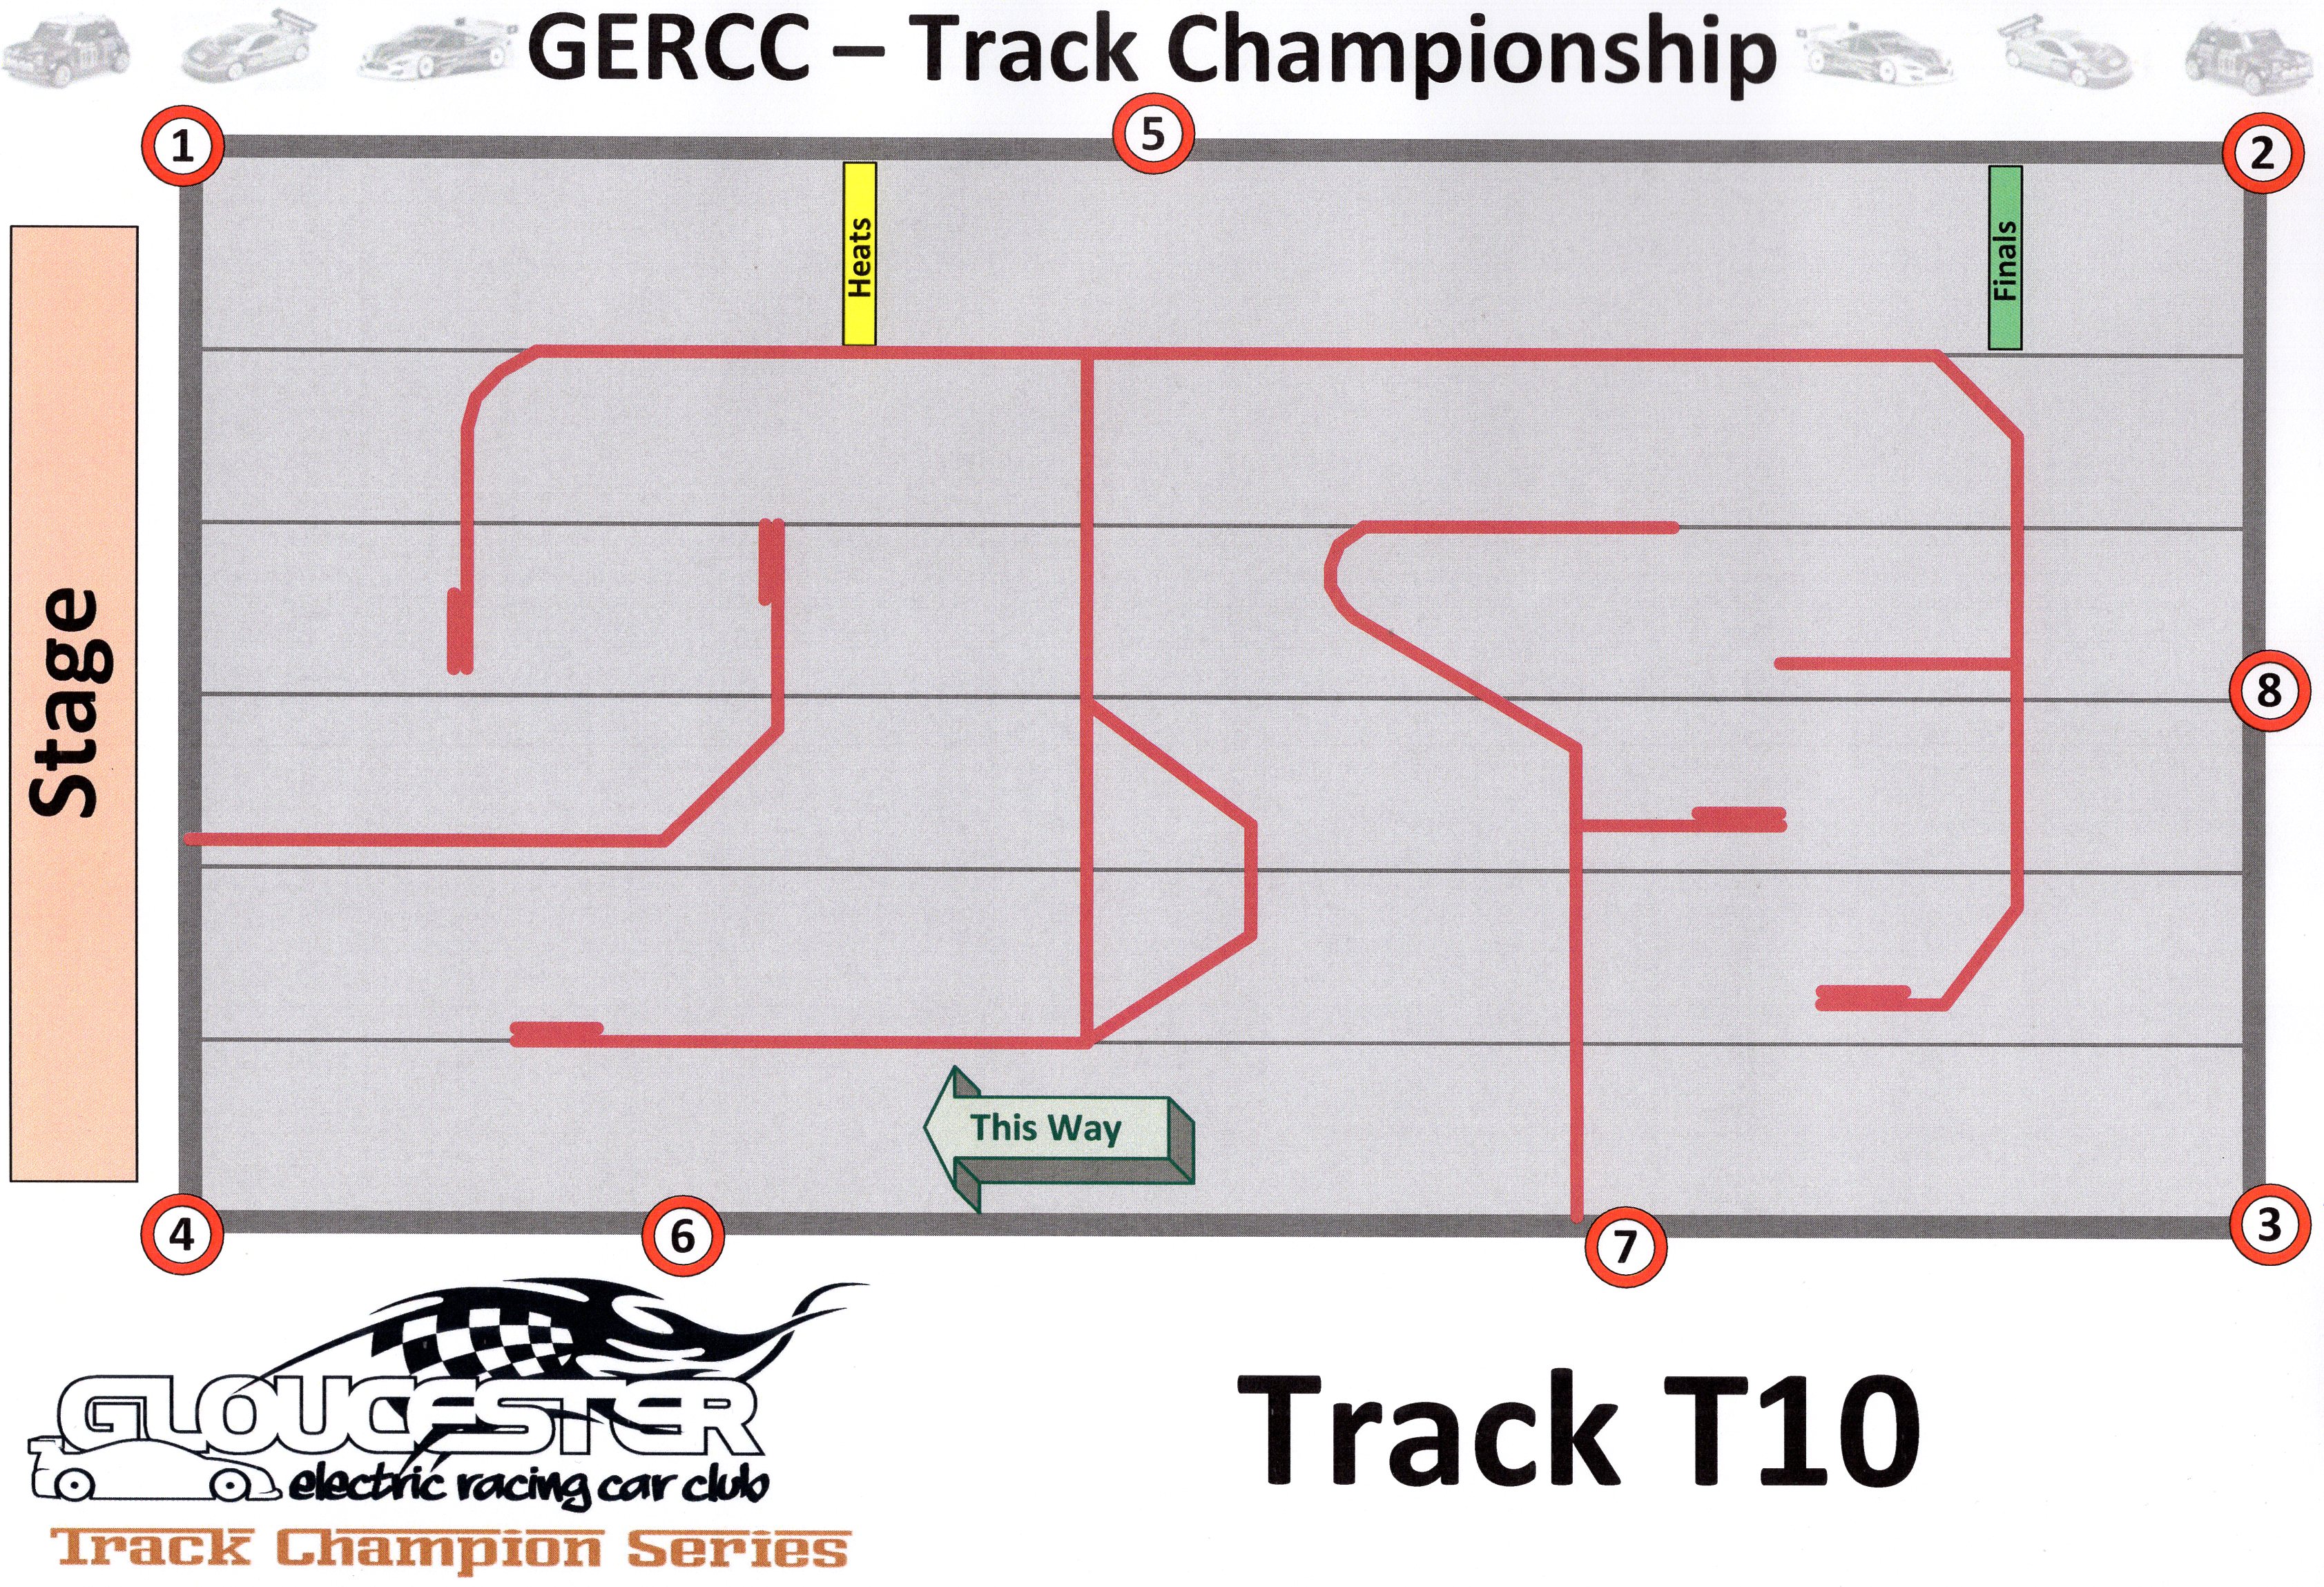 GERCC TCS Track 10